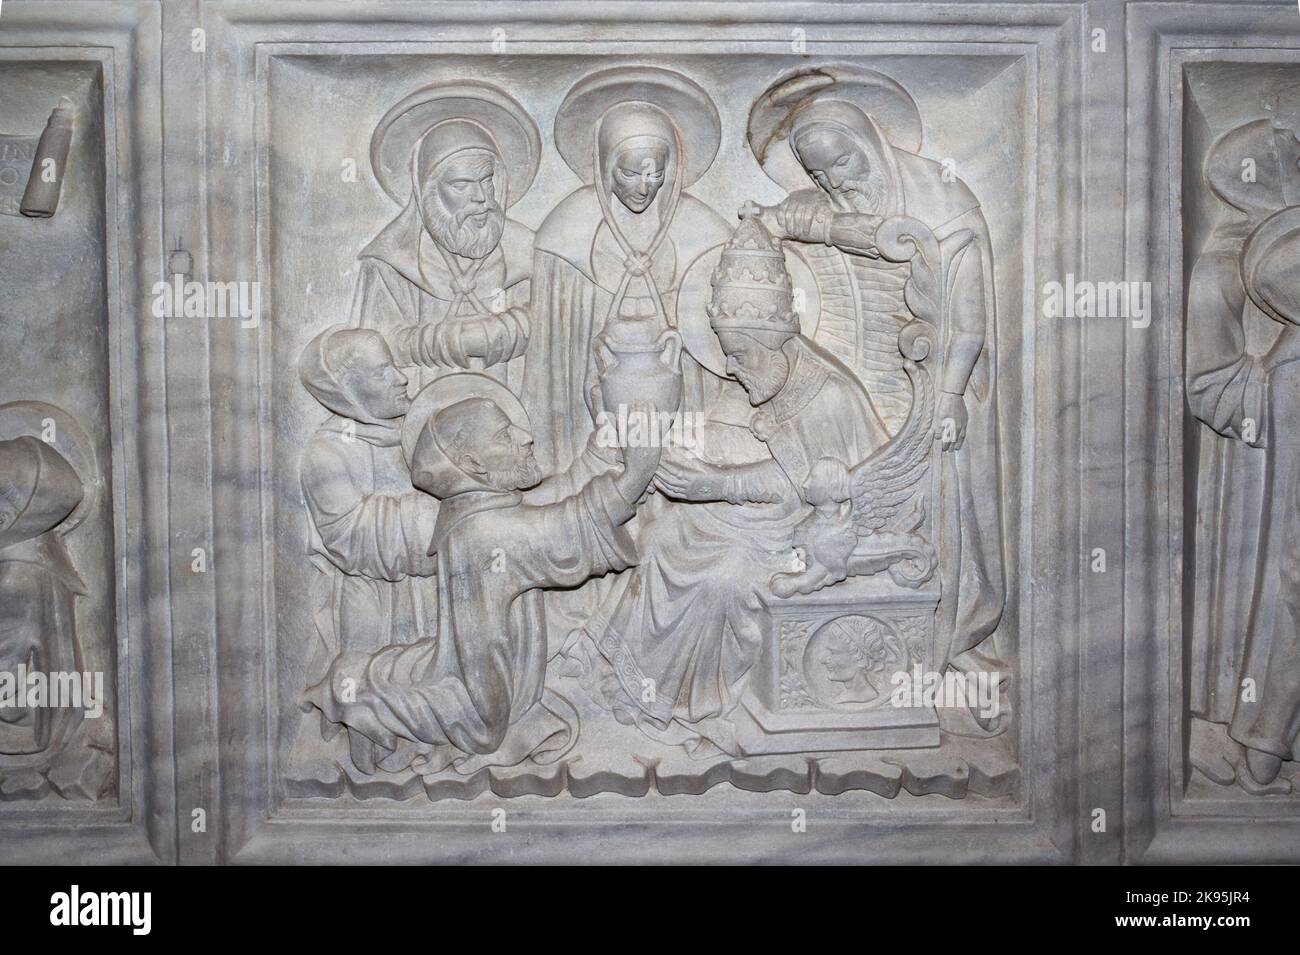 Le Pape Grégoire I présente le watervessel à St Columbanus - sarcophage de Saint Columbanus (par Giovanni dei Patriarchi 1480) - crypte de l'abbaye de Bobbio Banque D'Images